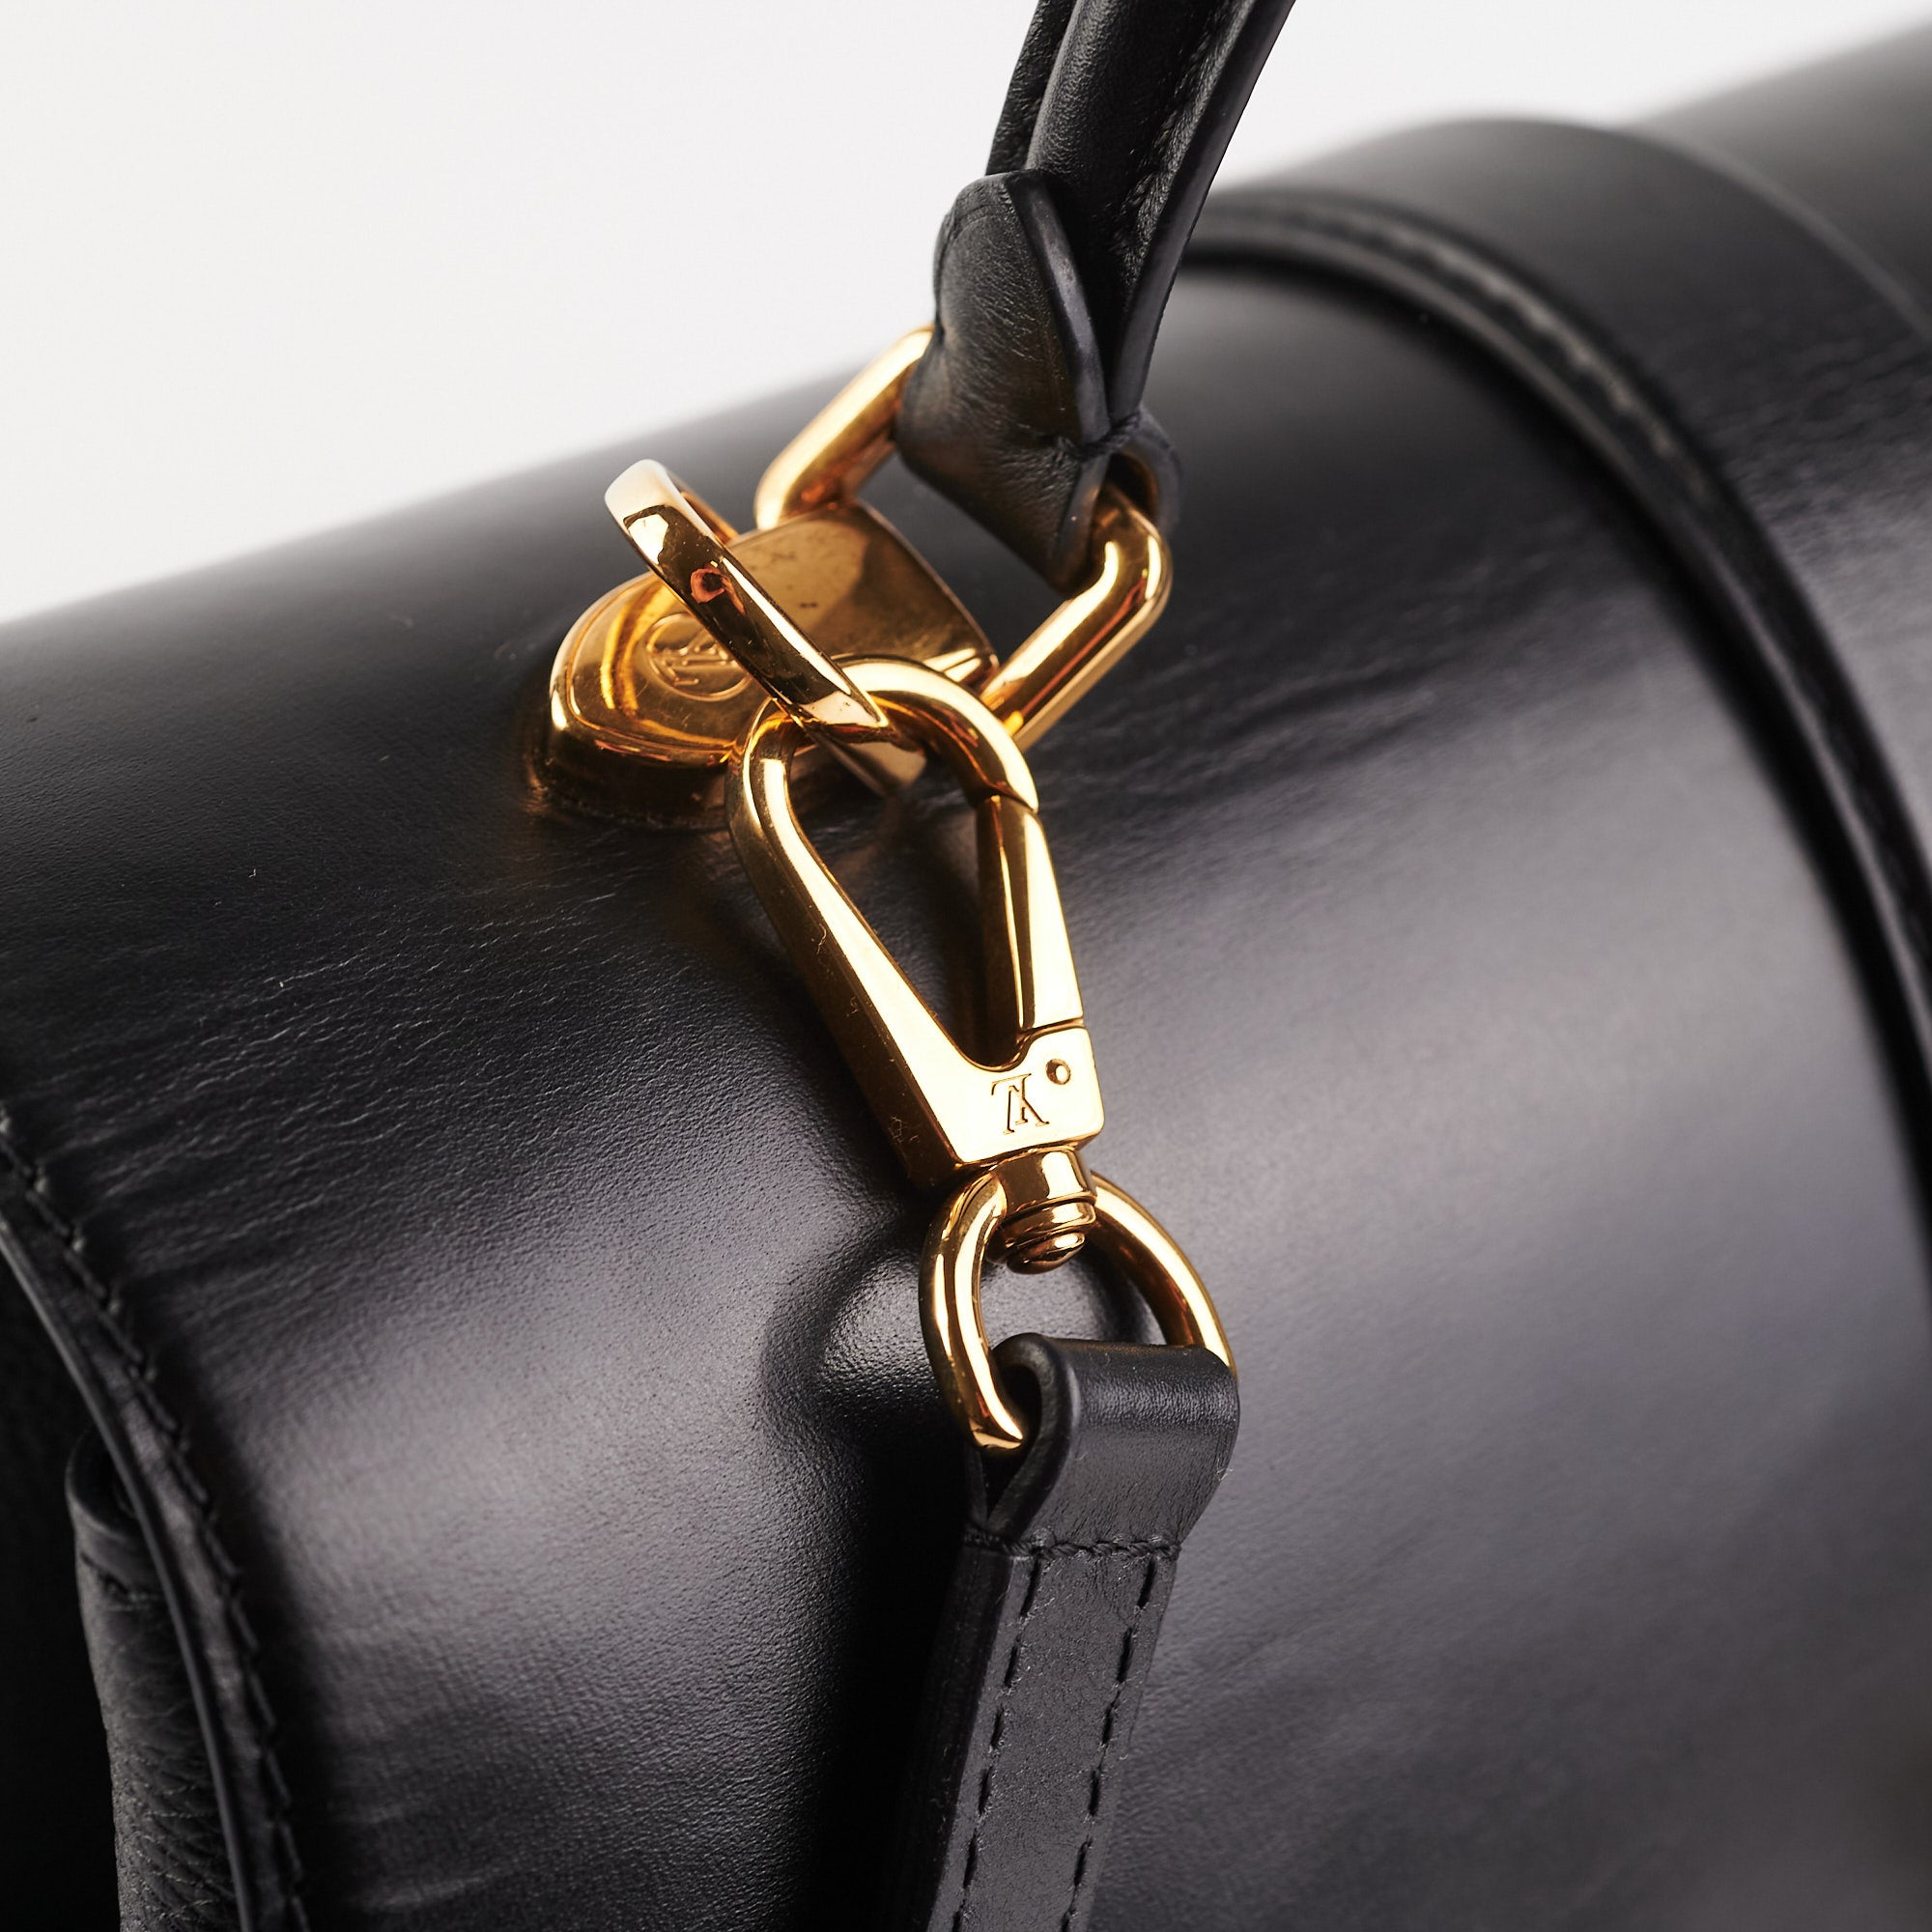 Louis Vuitton Rose Des Vents Black Leather PM Bag - BOPF